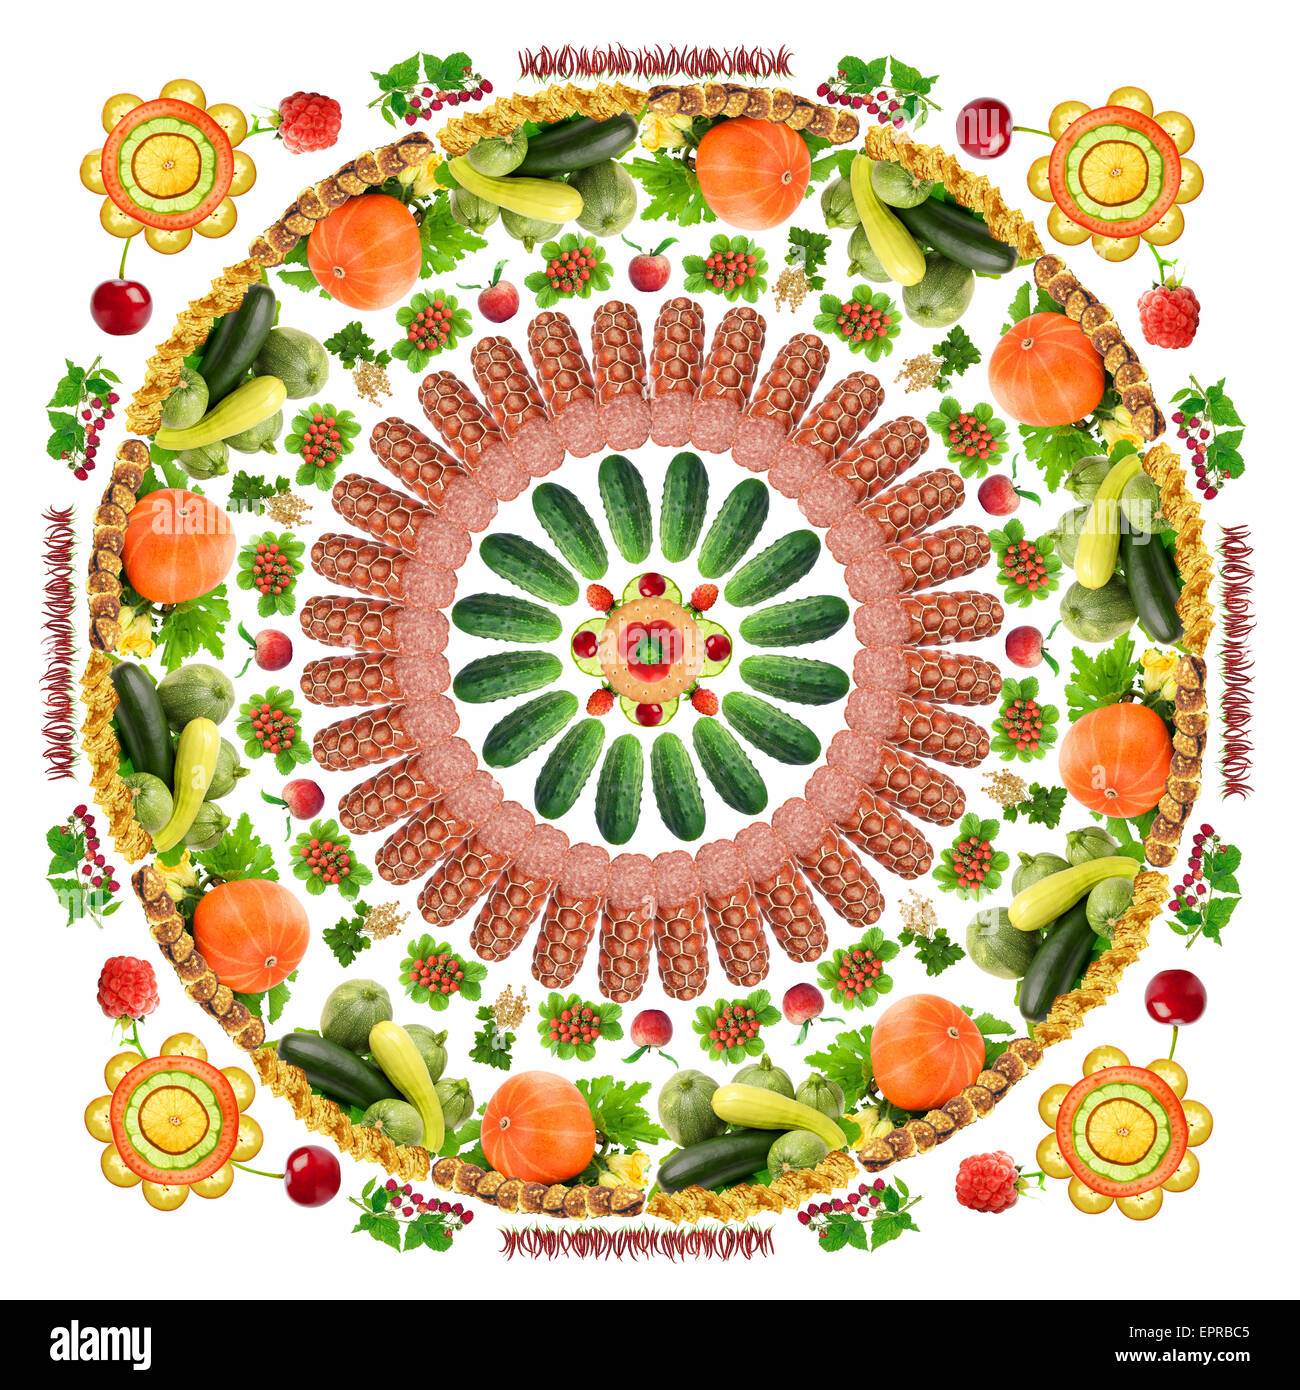 Quadri astratti alimentare mandala realizzato da frutti, verdure, salumi e dolci. Fatte a mano collage isolato Foto Stock